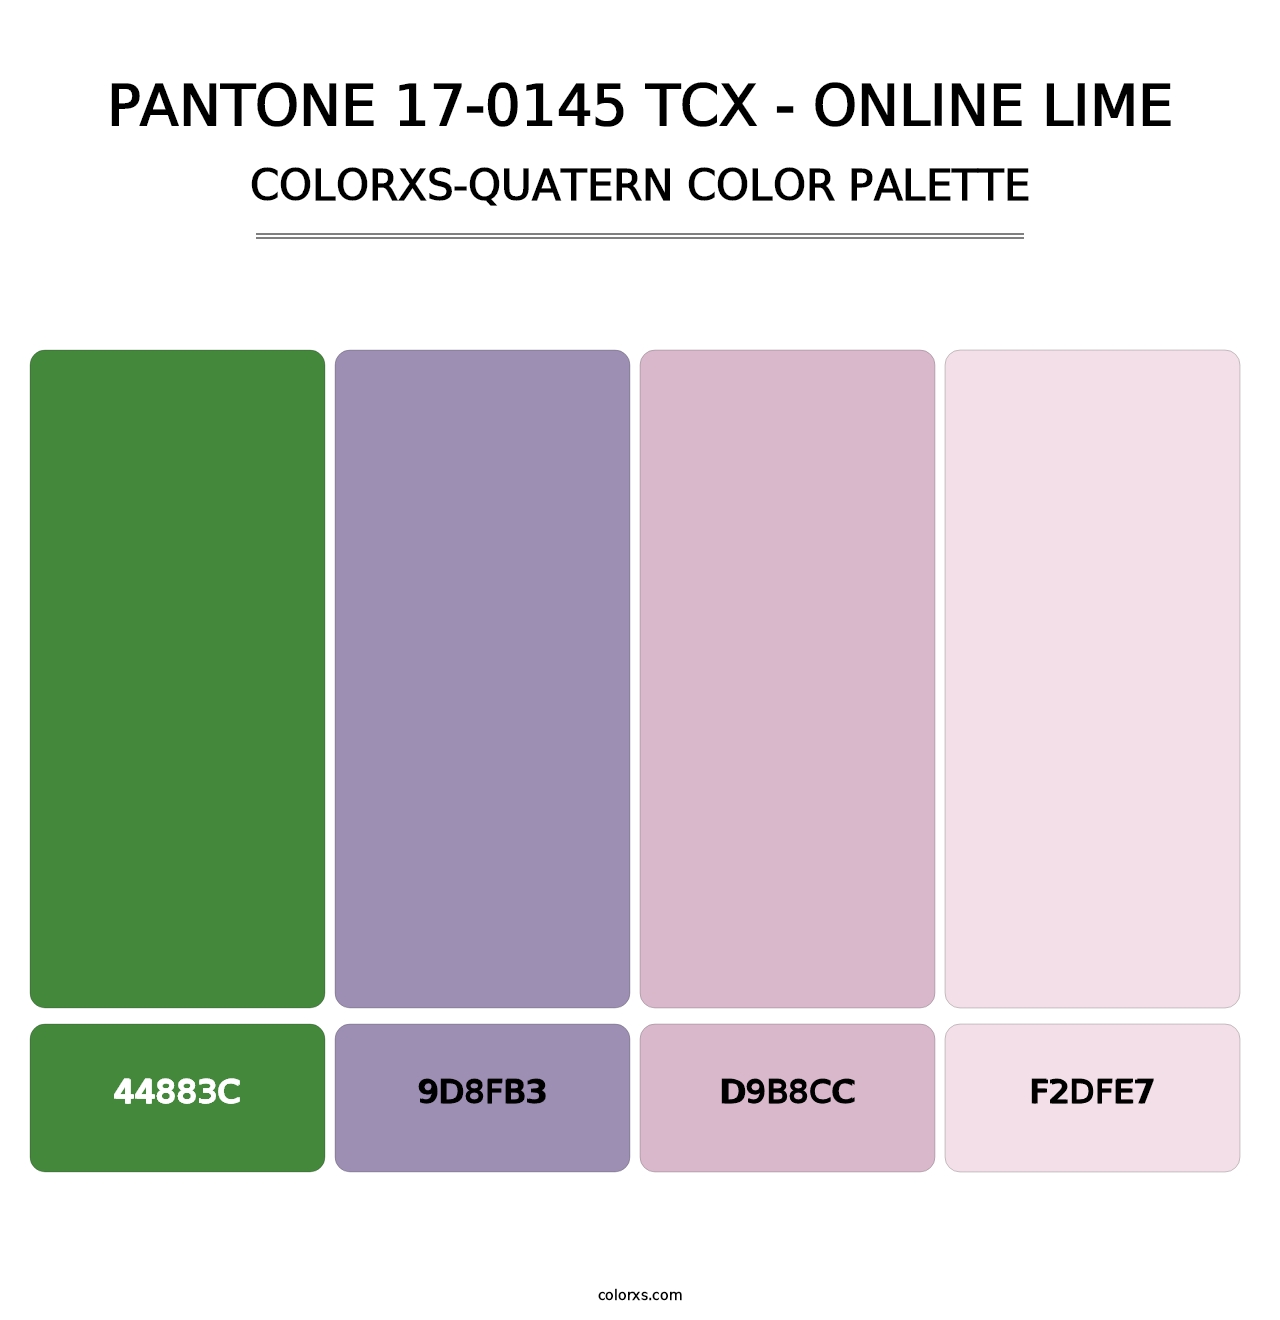 PANTONE 17-0145 TCX - Online Lime - Colorxs Quatern Palette